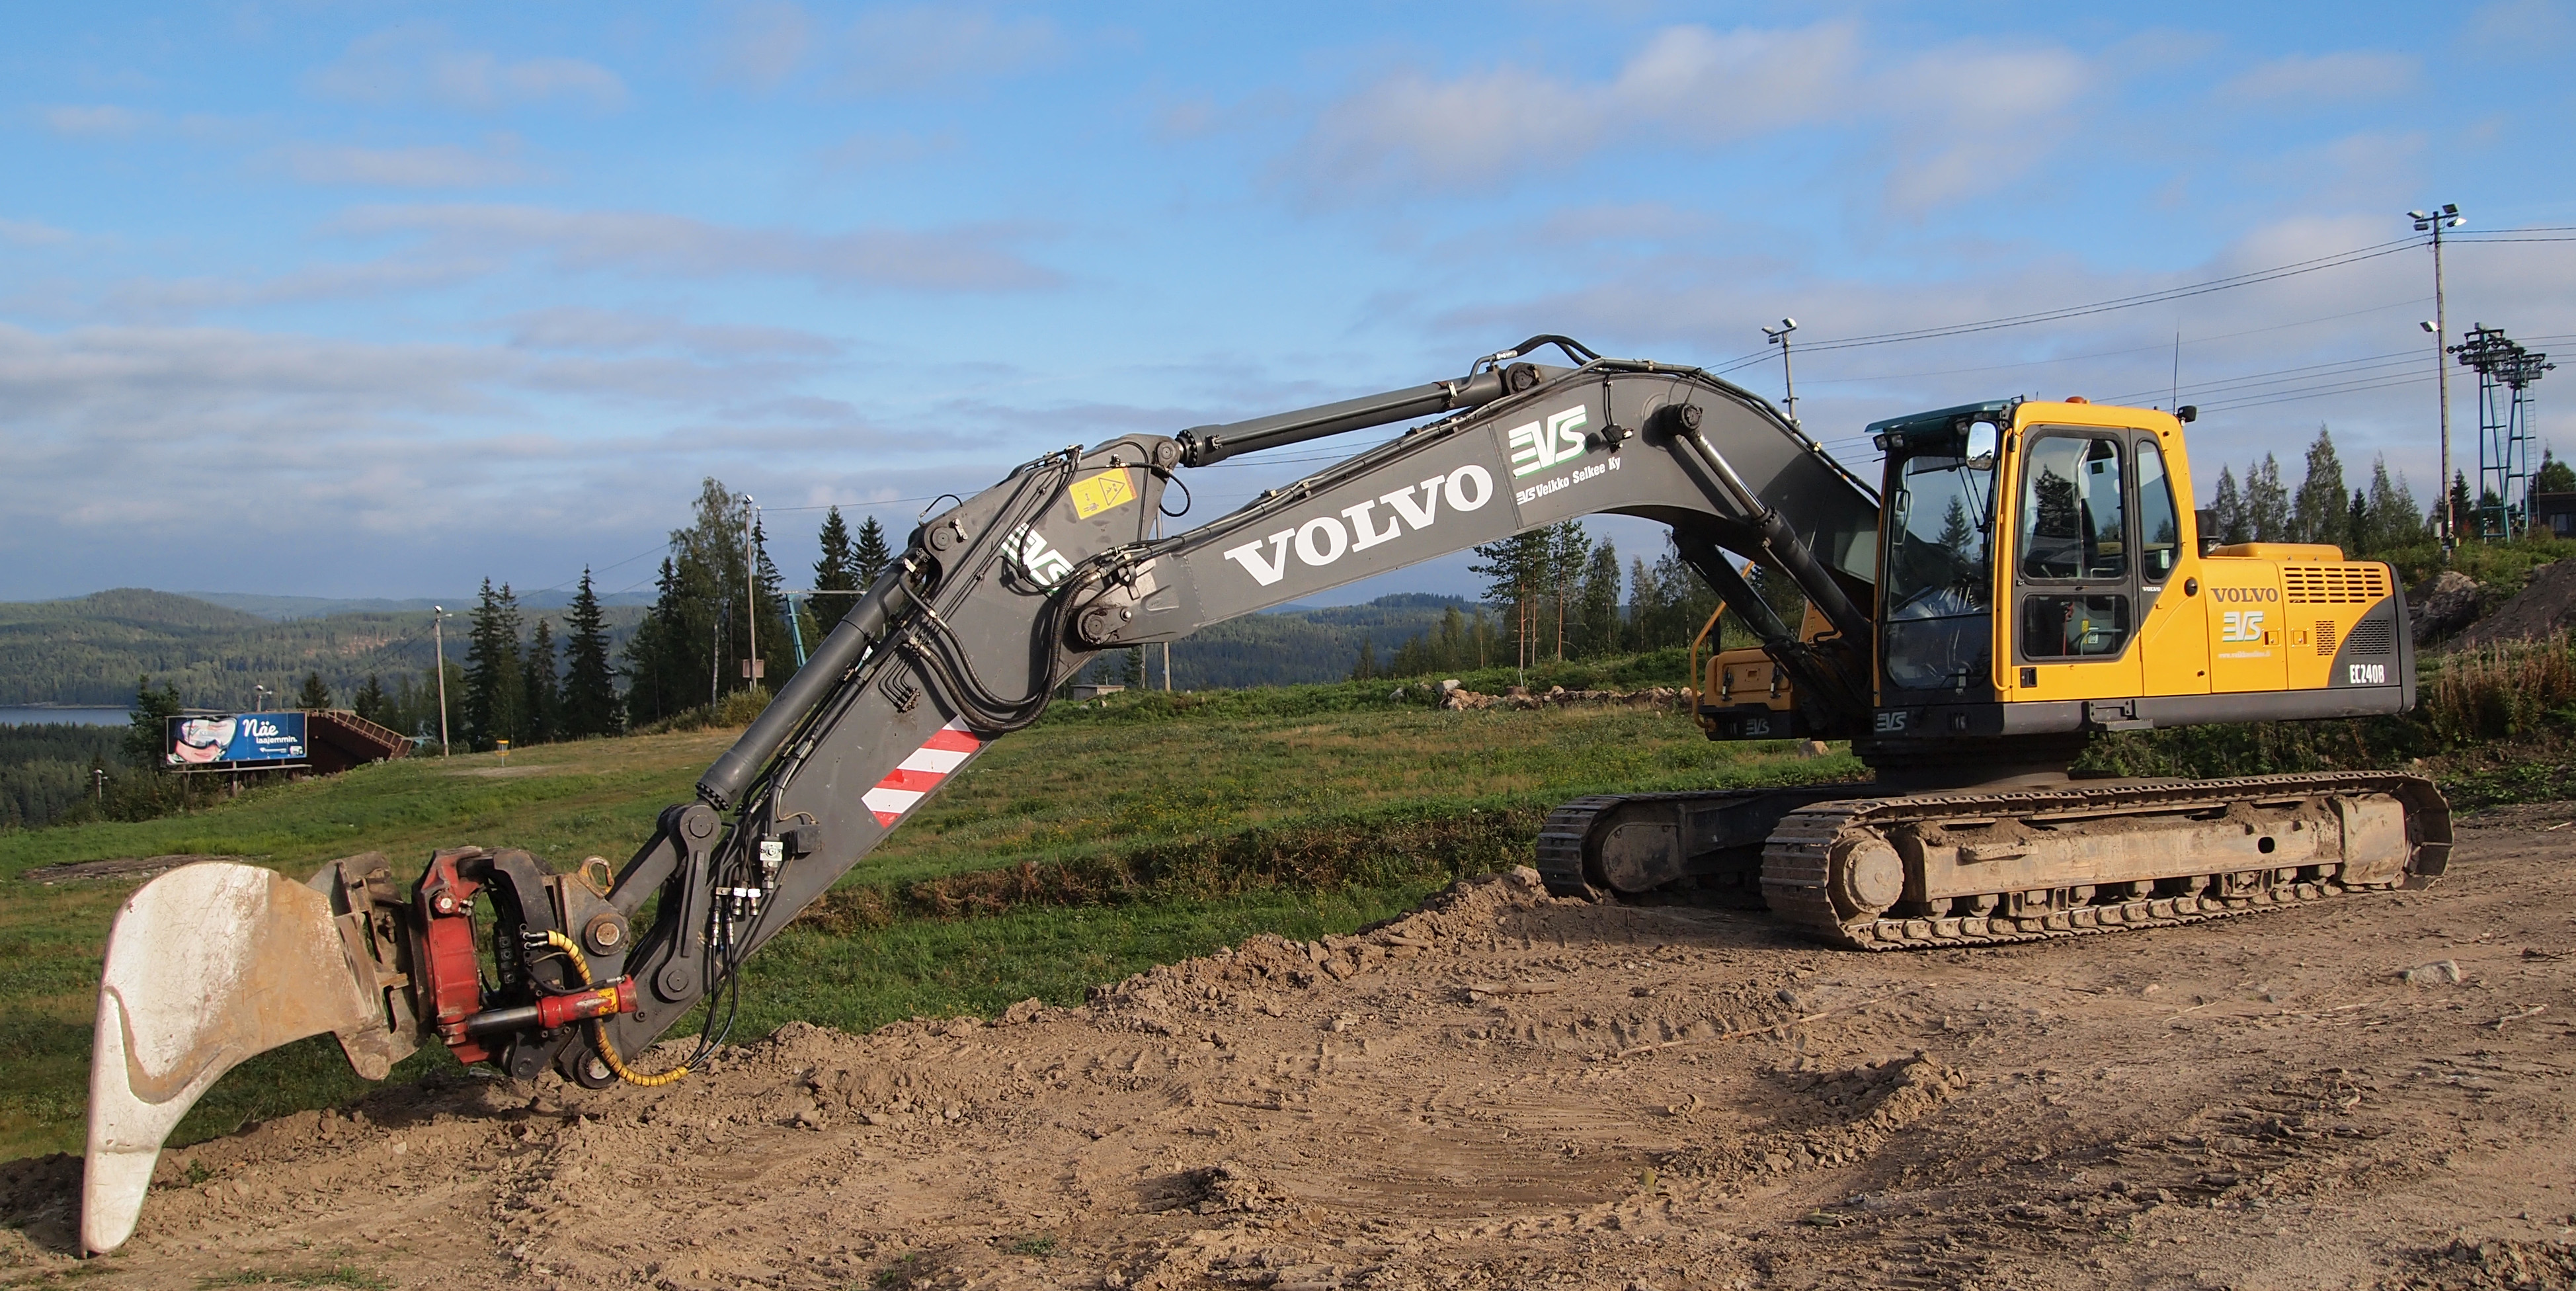 Volvo Excavator #16